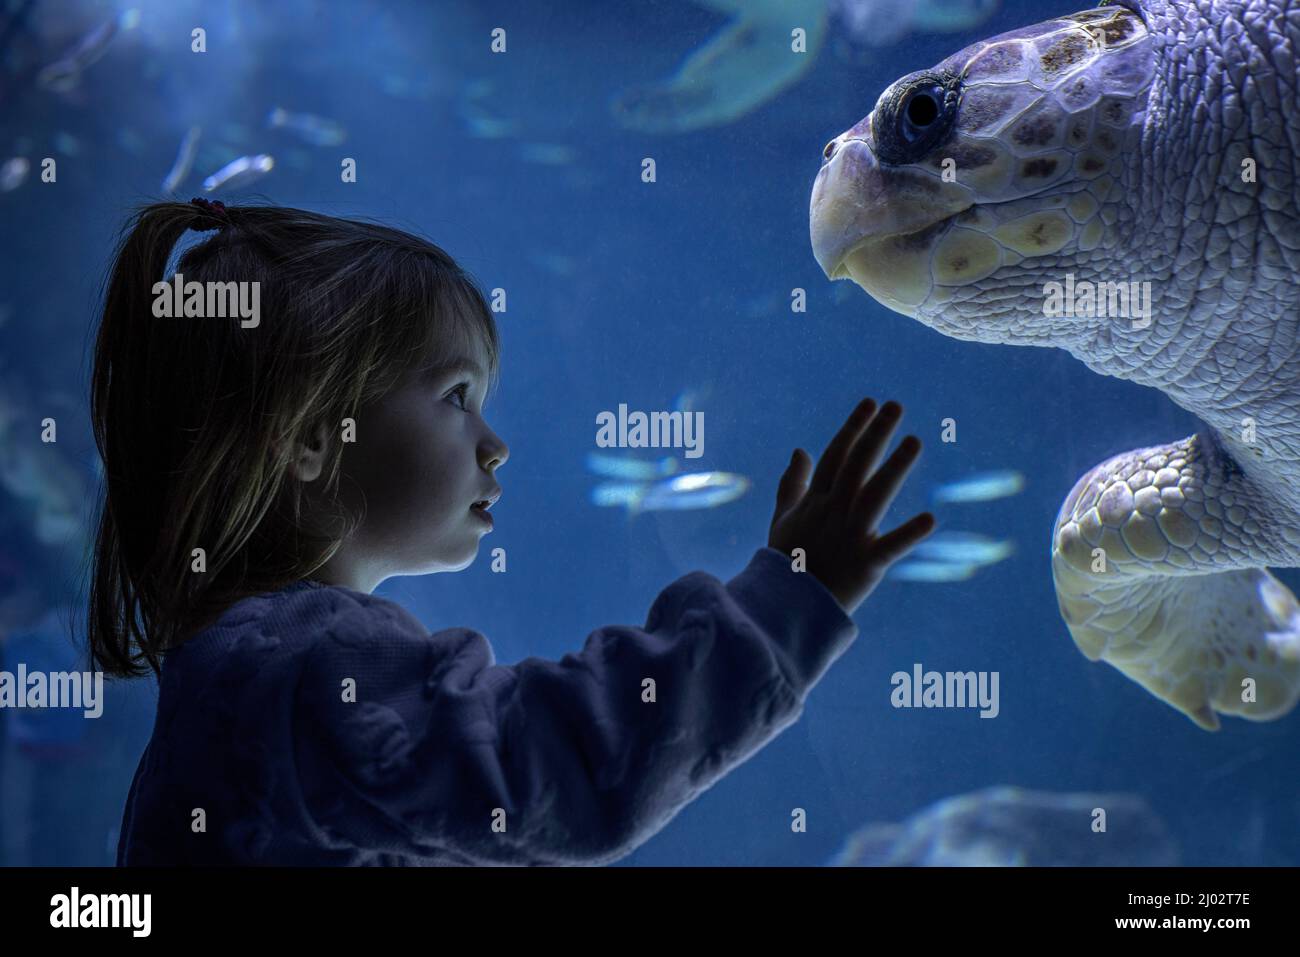 Interaction between a little girl and a loggerhead sea turtle (Caretta caretta) in an aquarium. Stock Photo